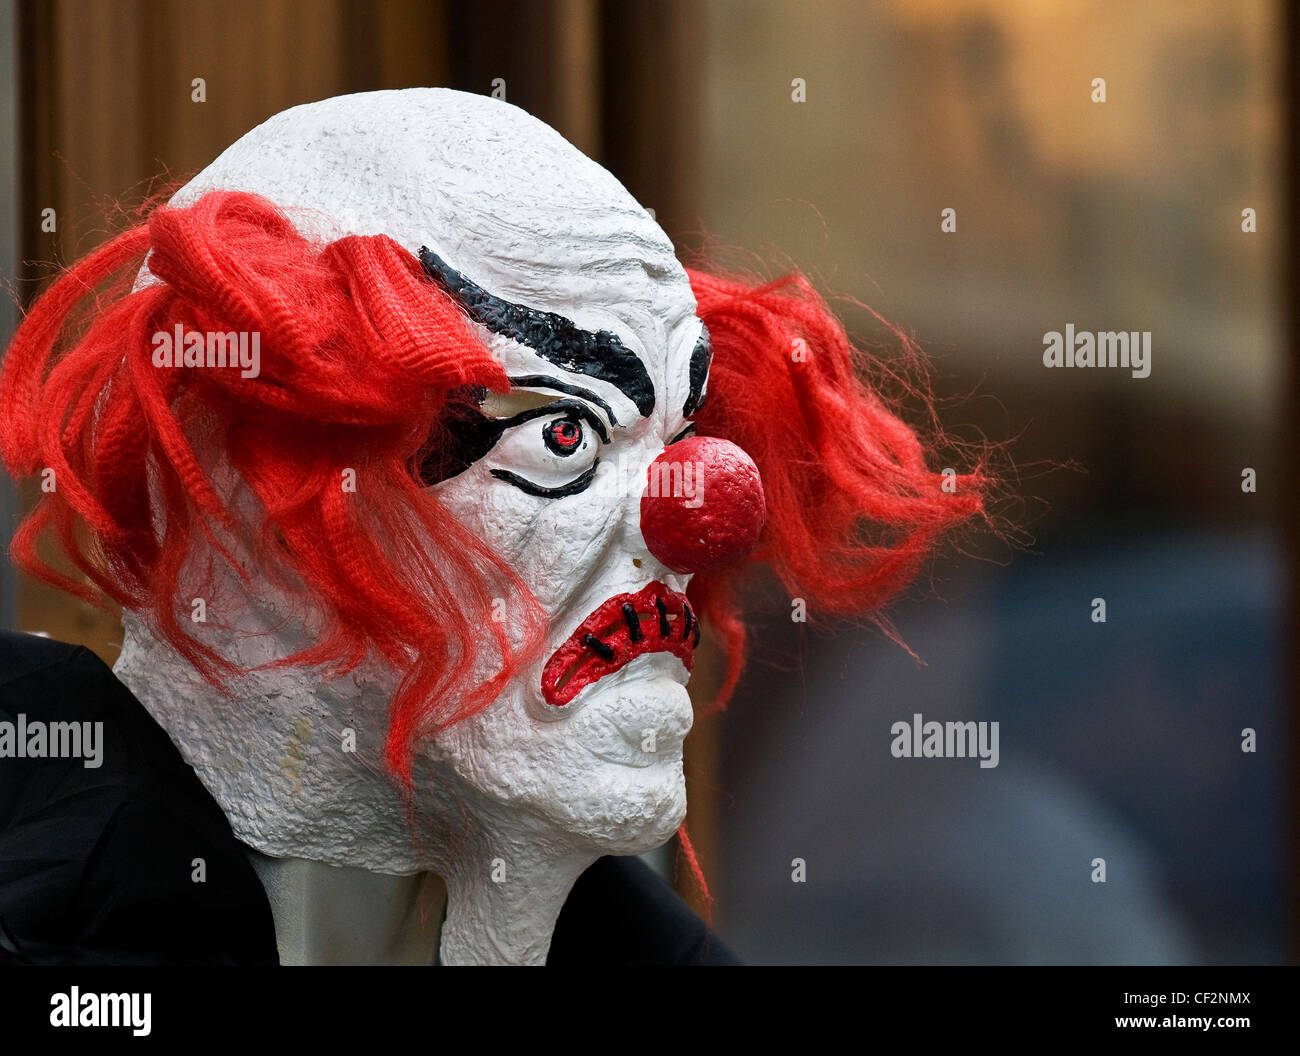 Eine erschreckende Clownsmaske an einem Dummy. Stockfoto